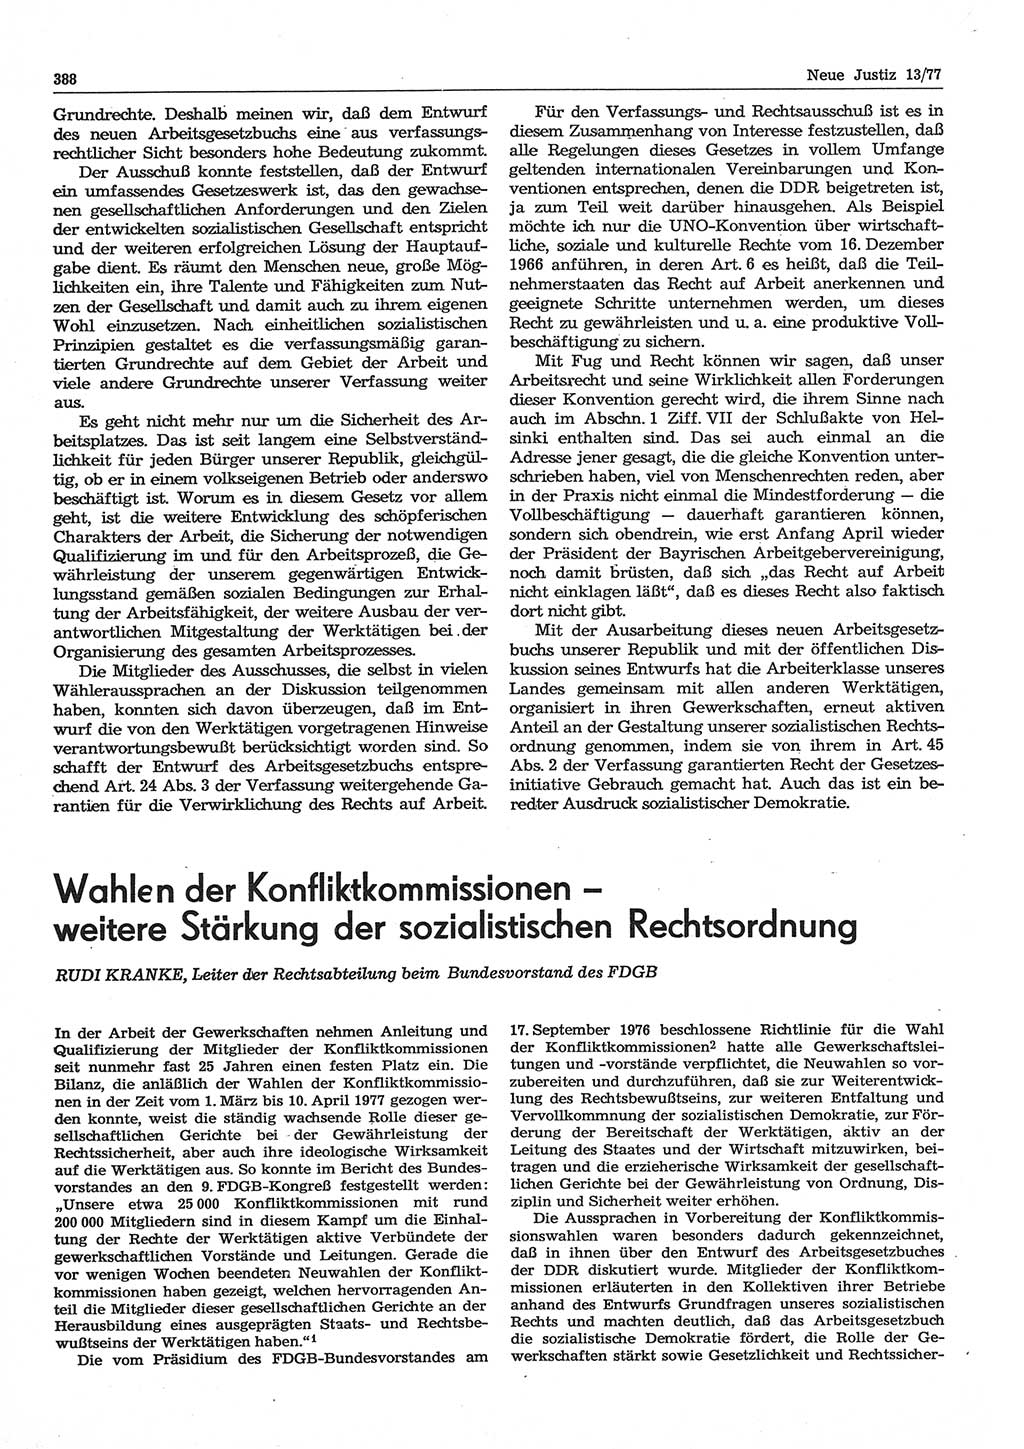 Neue Justiz (NJ), Zeitschrift für Recht und Rechtswissenschaft-Zeitschrift, sozialistisches Recht und Gesetzlichkeit, 31. Jahrgang 1977, Seite 388 (NJ DDR 1977, S. 388)